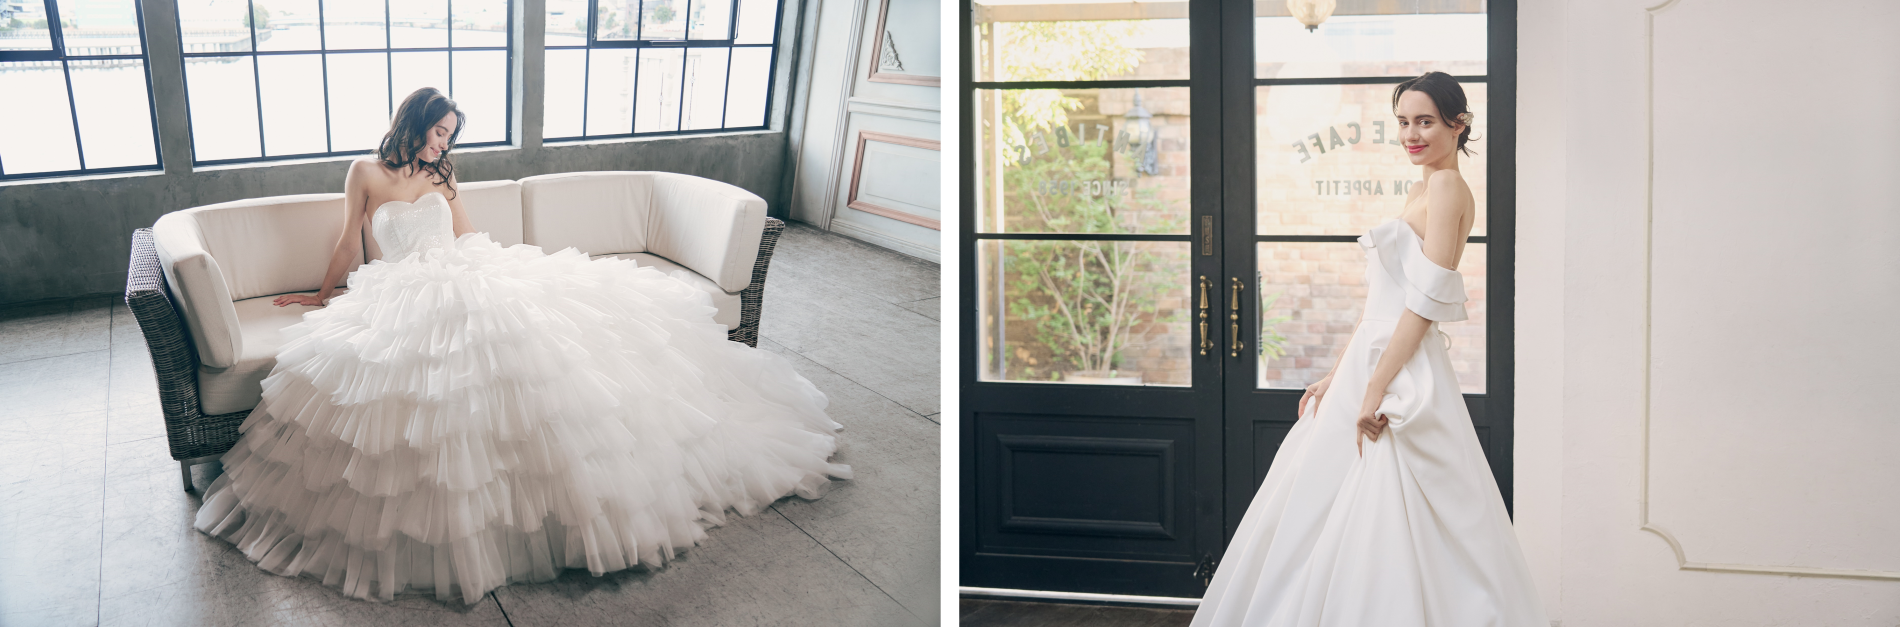 人気セレクトショップBEAMSのライセンスブランド「BEAMS DESIGN」監修
オリジナル婚礼衣裳ブランド『BEAMS DESIGN』より
新作のウェディングドレス2デザイン、タキシード6デザインを発表！